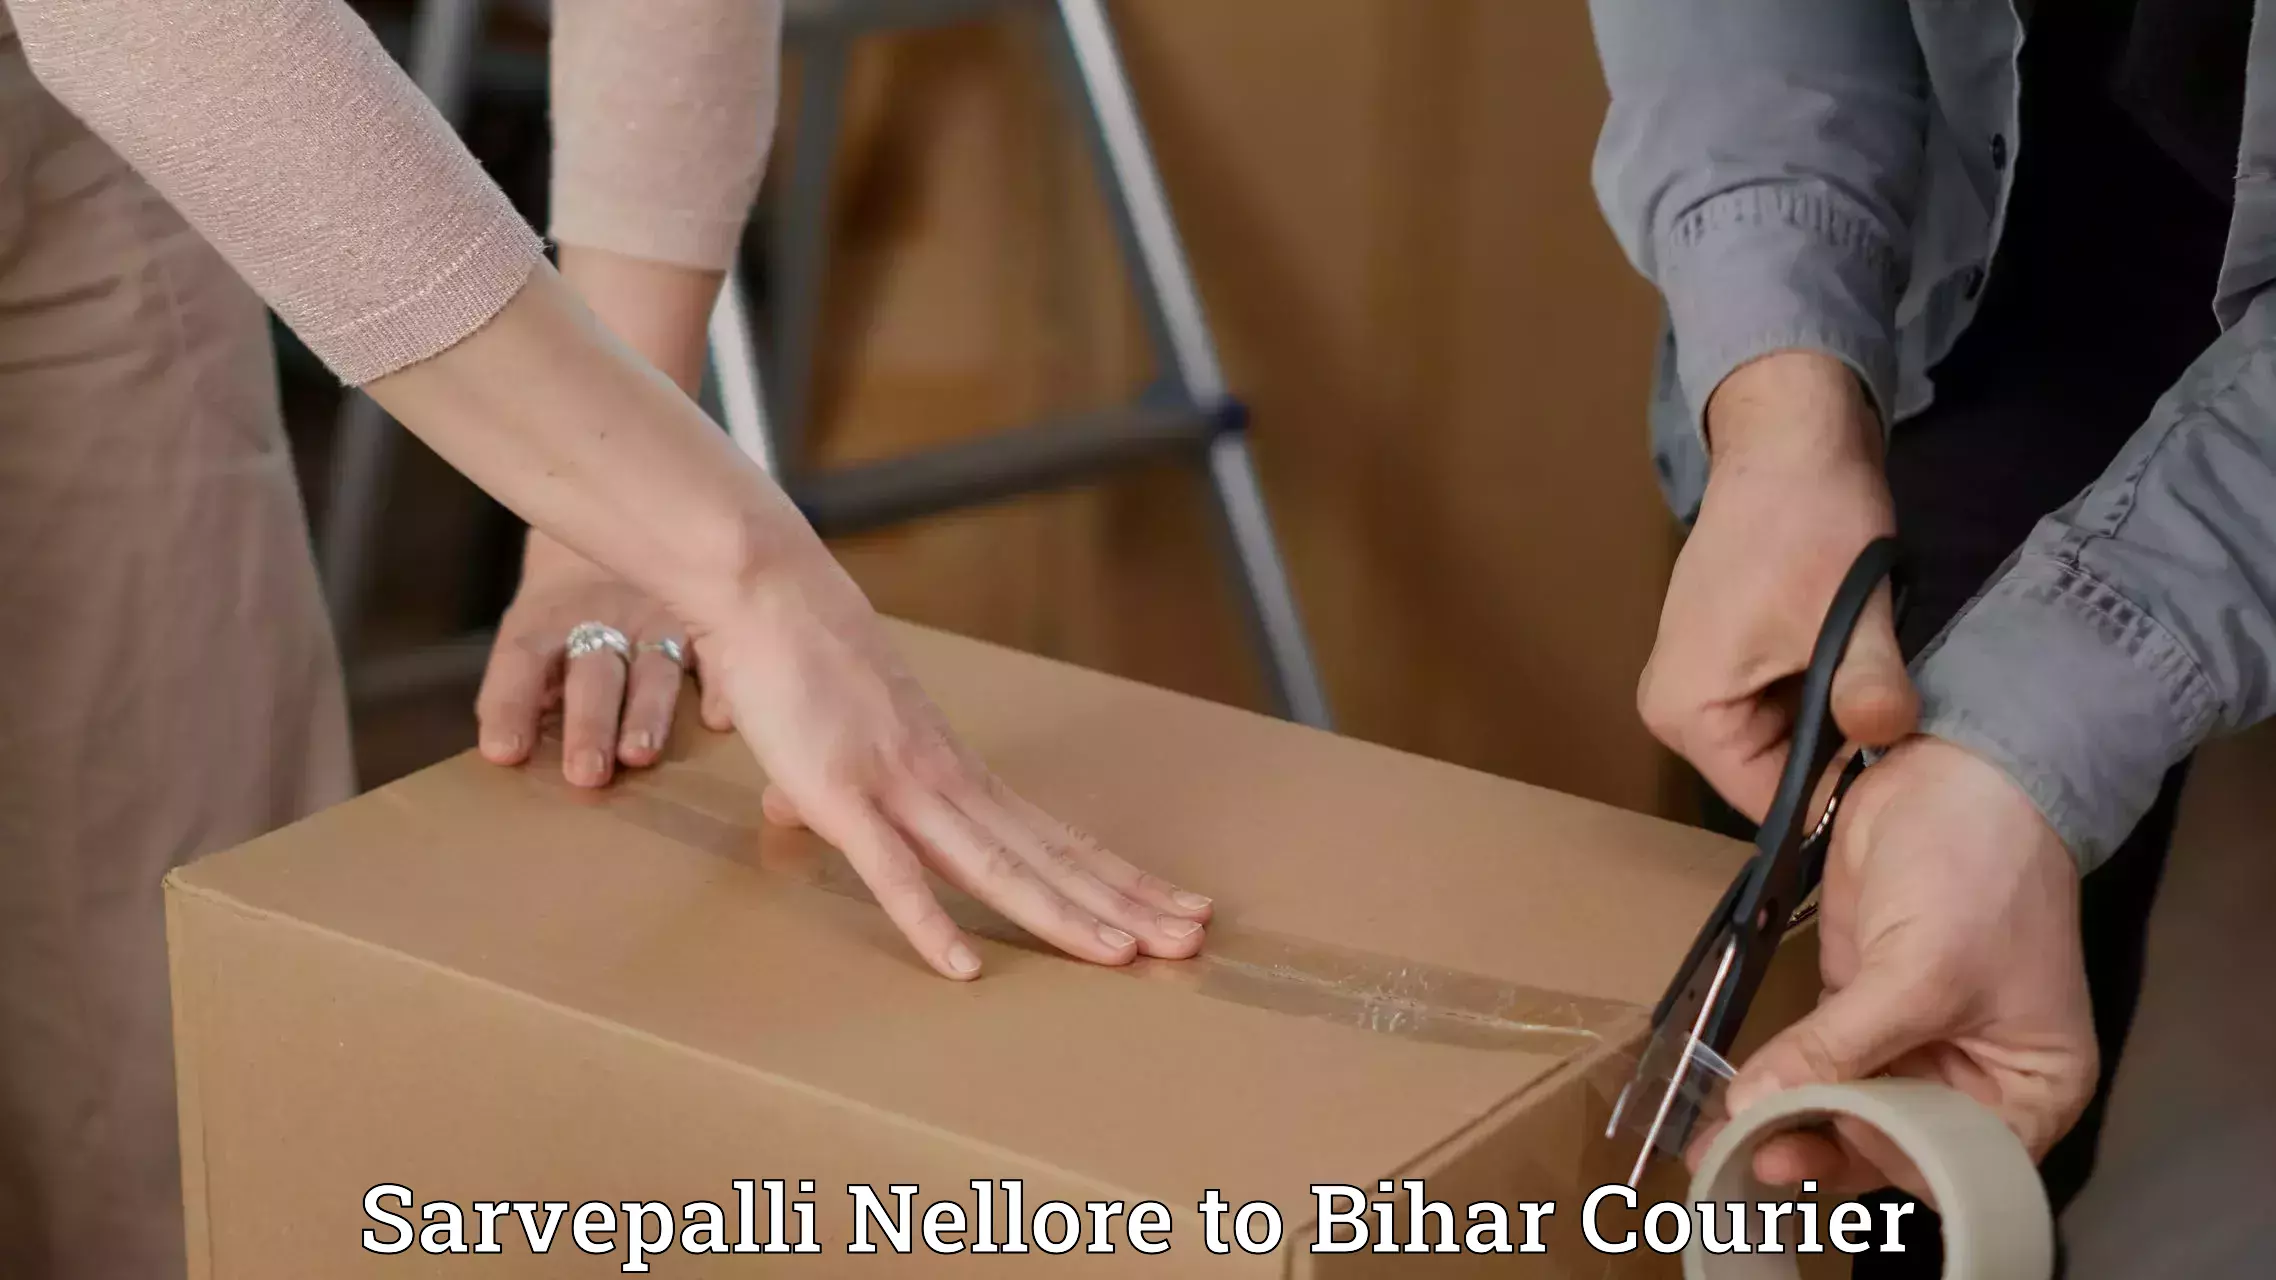 Luggage delivery providers Sarvepalli Nellore to Bihar